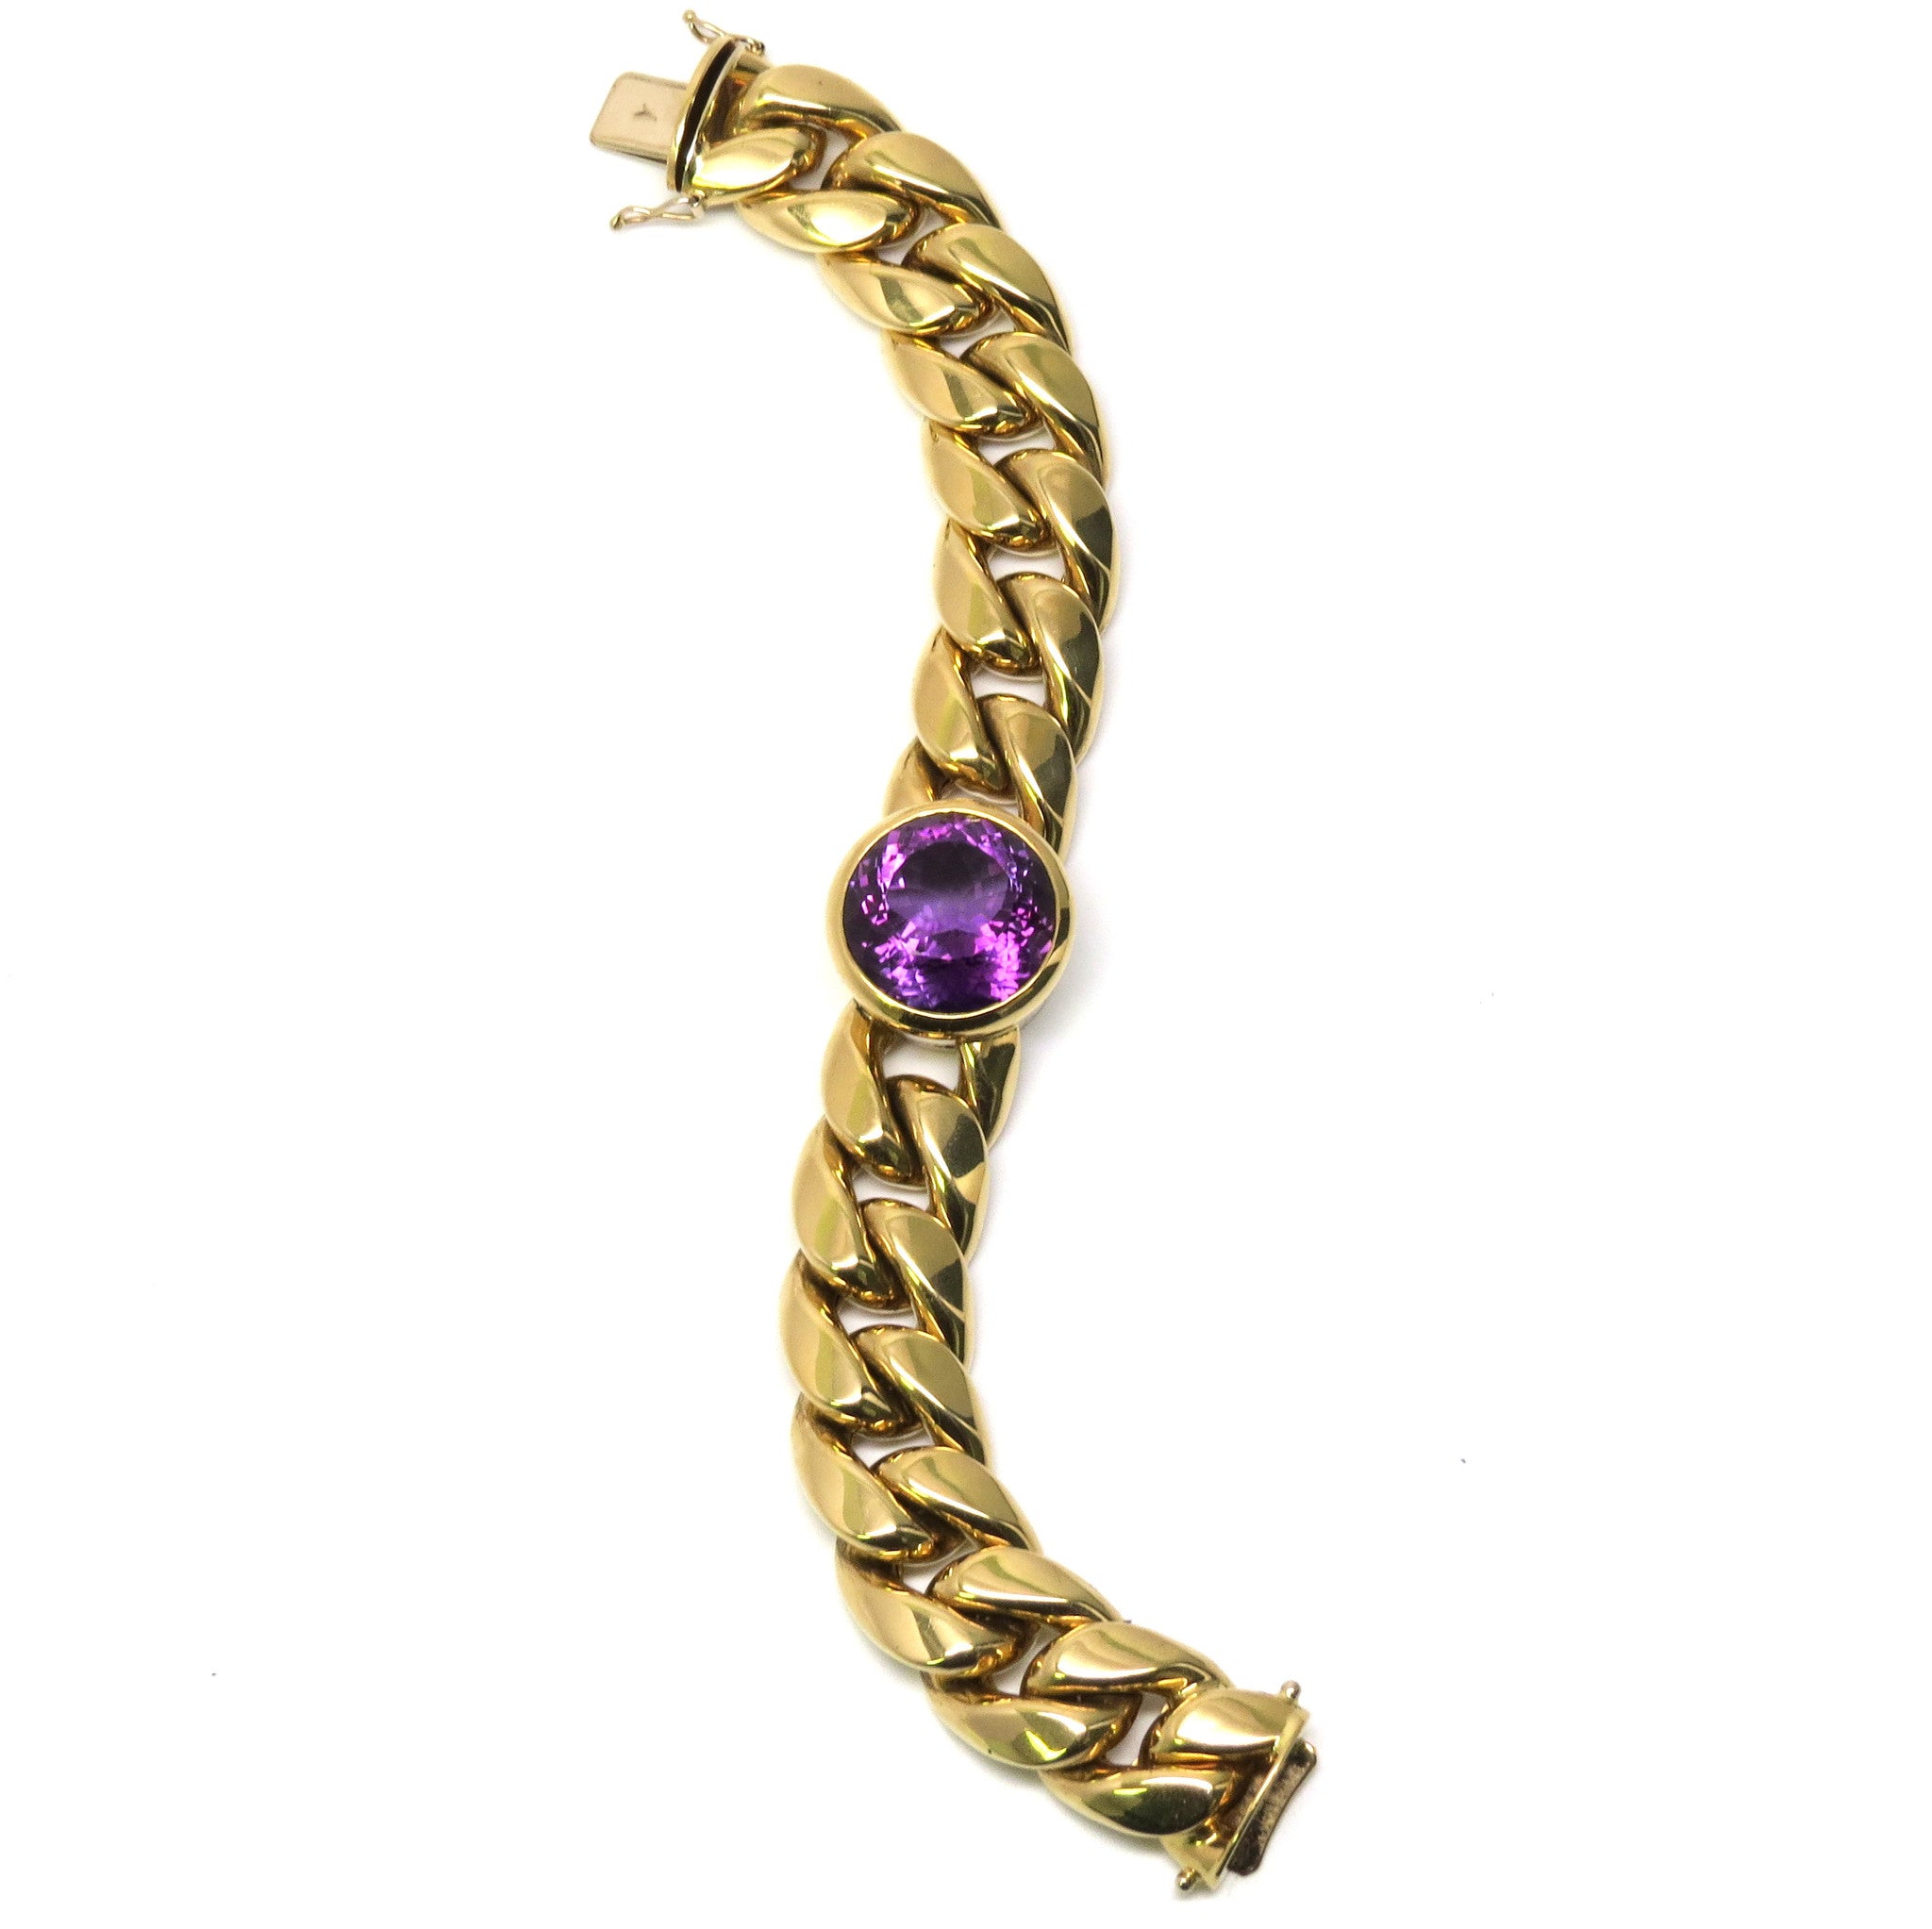 Tiffany Paloma Picasso gold amethyst bracelet